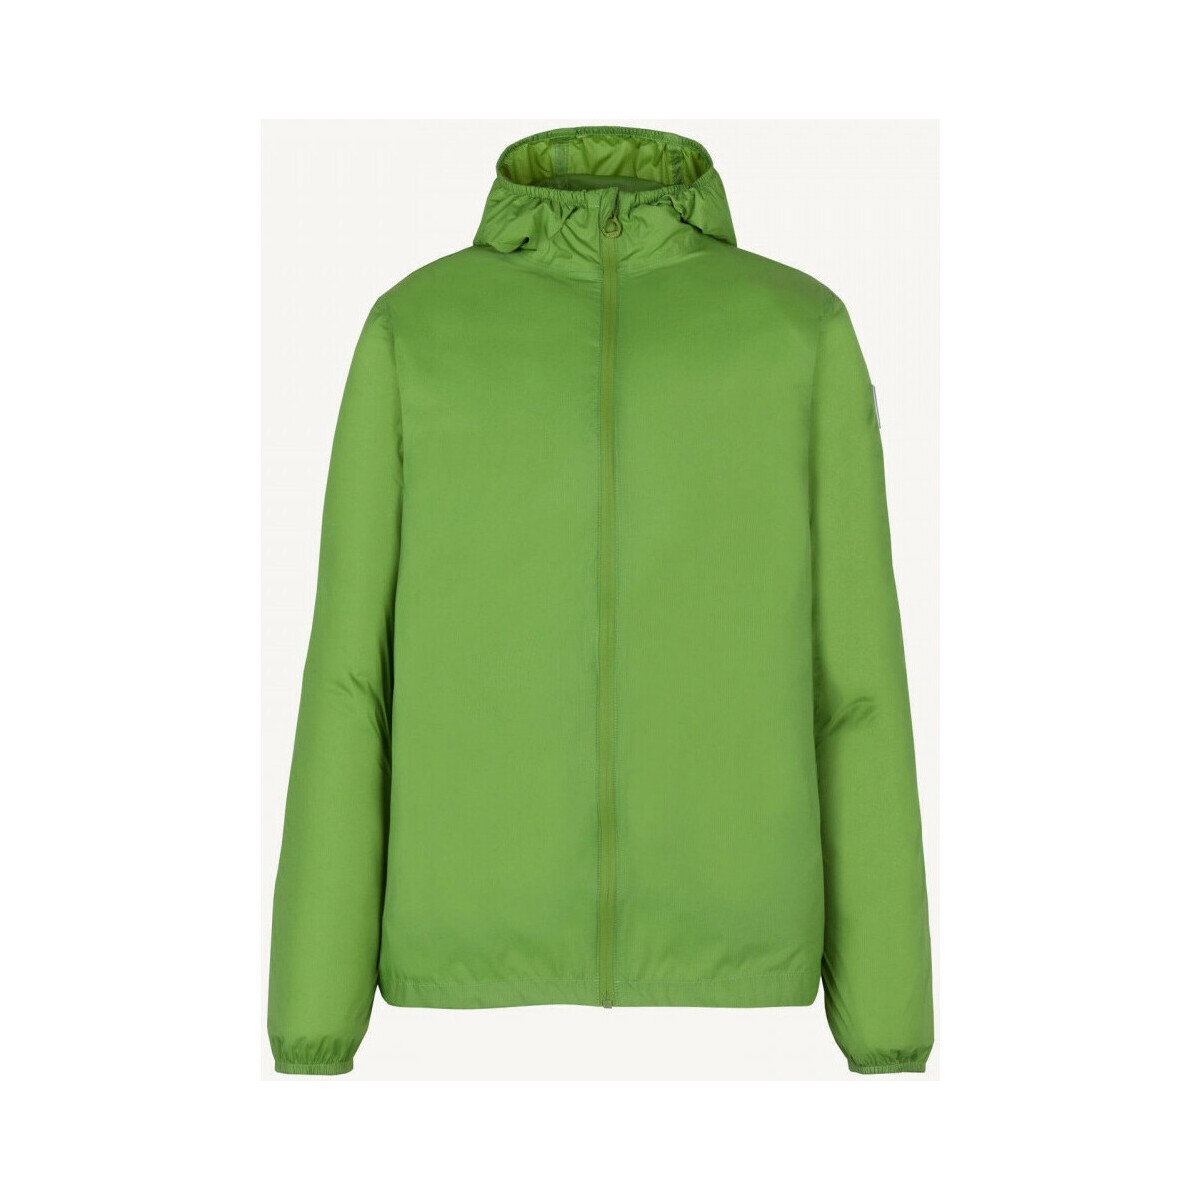 Abbigliamento Uomo Giacche / Blazer JOTT Derry Verde